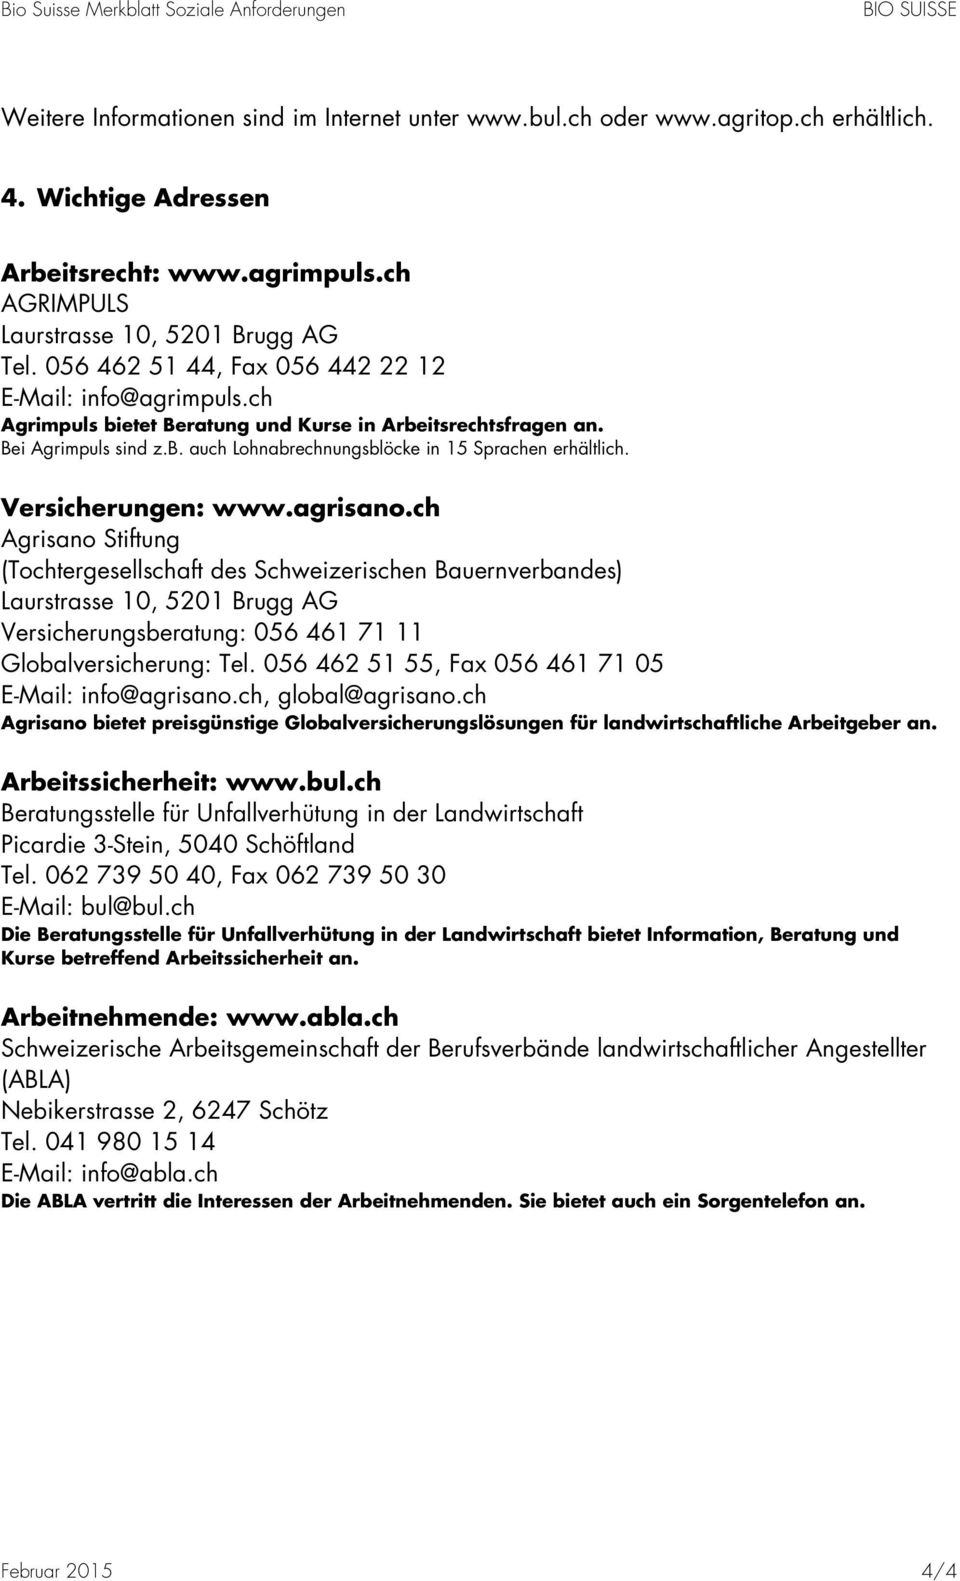 Versicherungen: www.agrisano.ch Agrisano Stiftung (Tochtergesellschaft des Schweizerischen Bauernverbandes) Laurstrasse 10, 5201 Brugg AG Versicherungsberatung: 056 461 71 11 Globalversicherung: Tel.